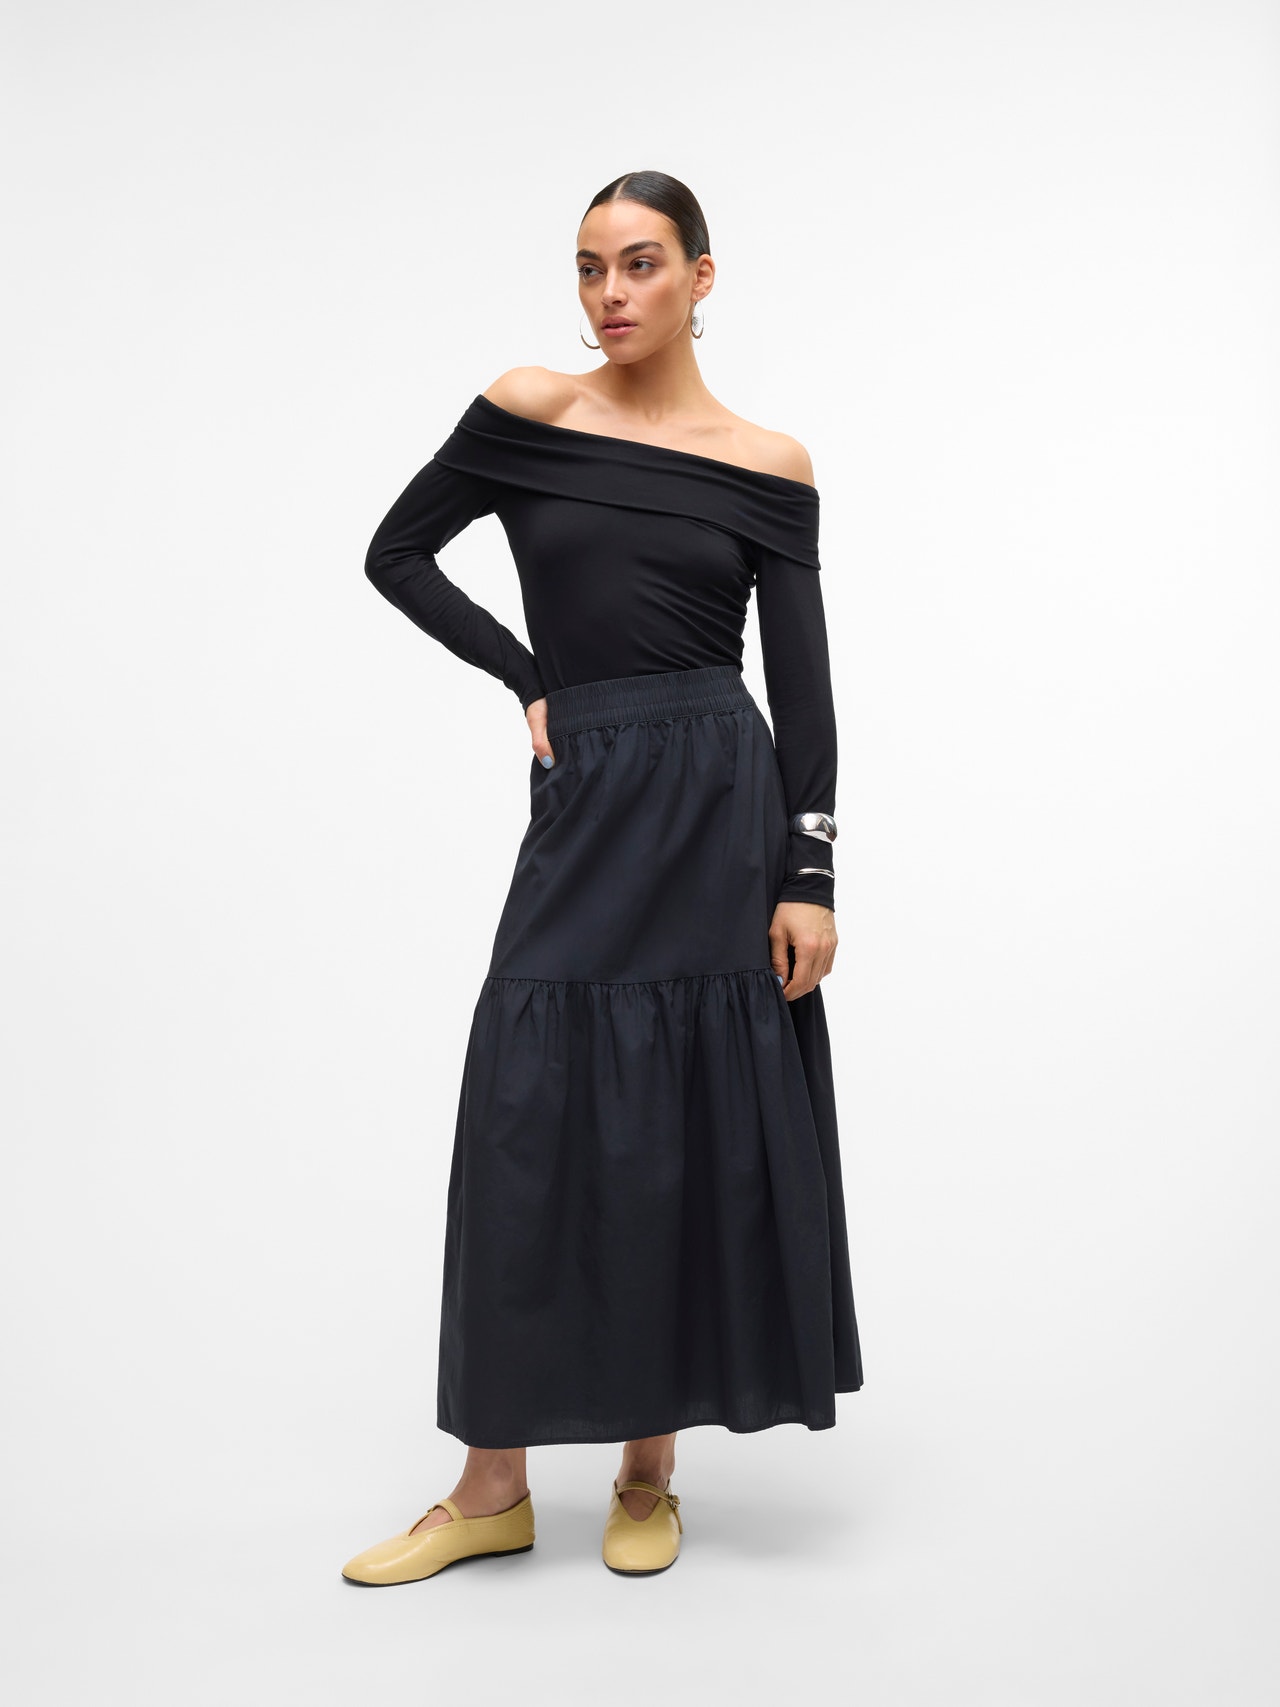 Vero Moda VMCHARLOTTE High waist Long Skirt -Black - 10303657